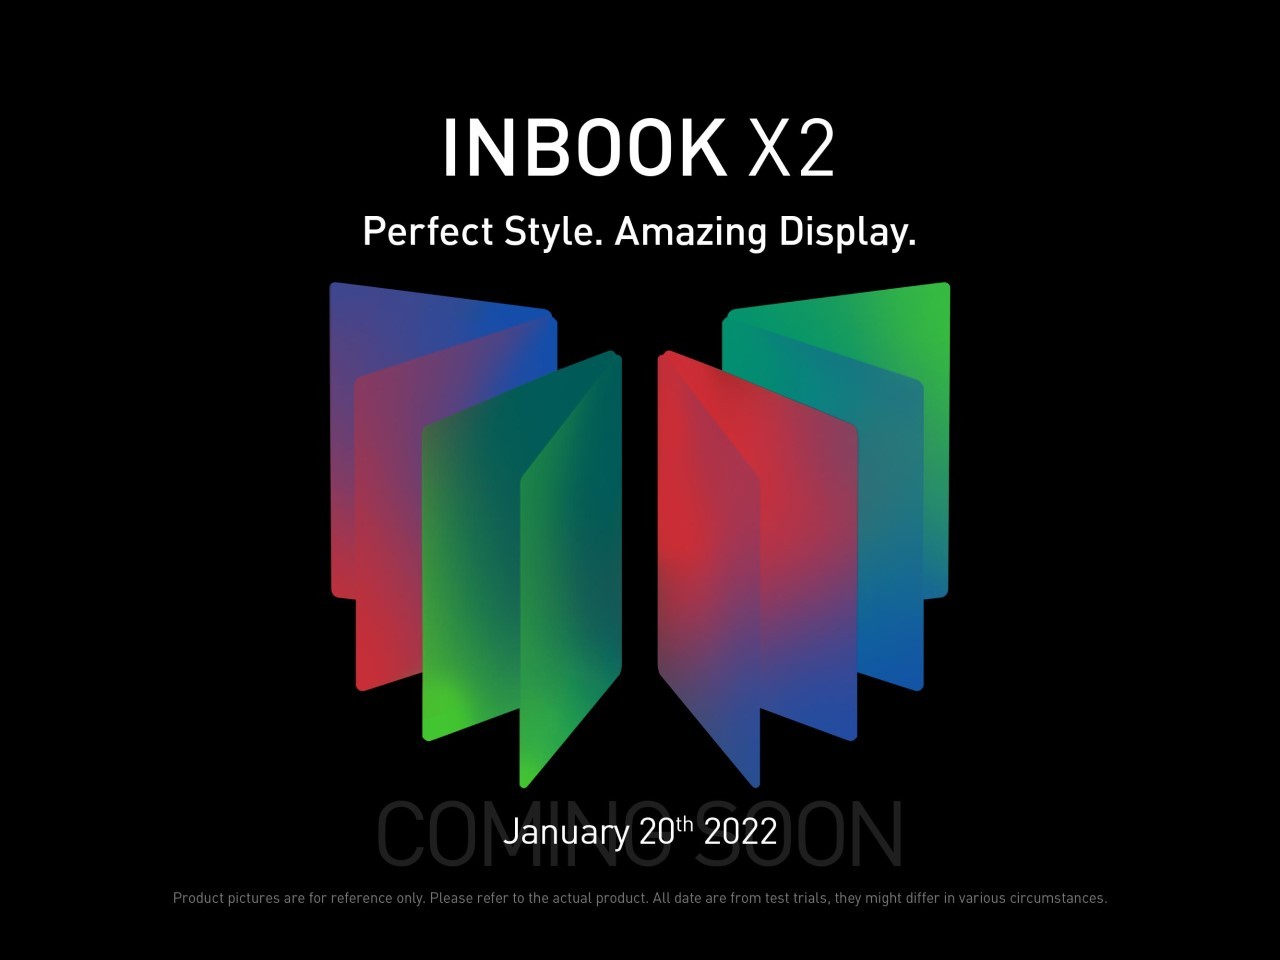 INFINIX-INBOOK-X2